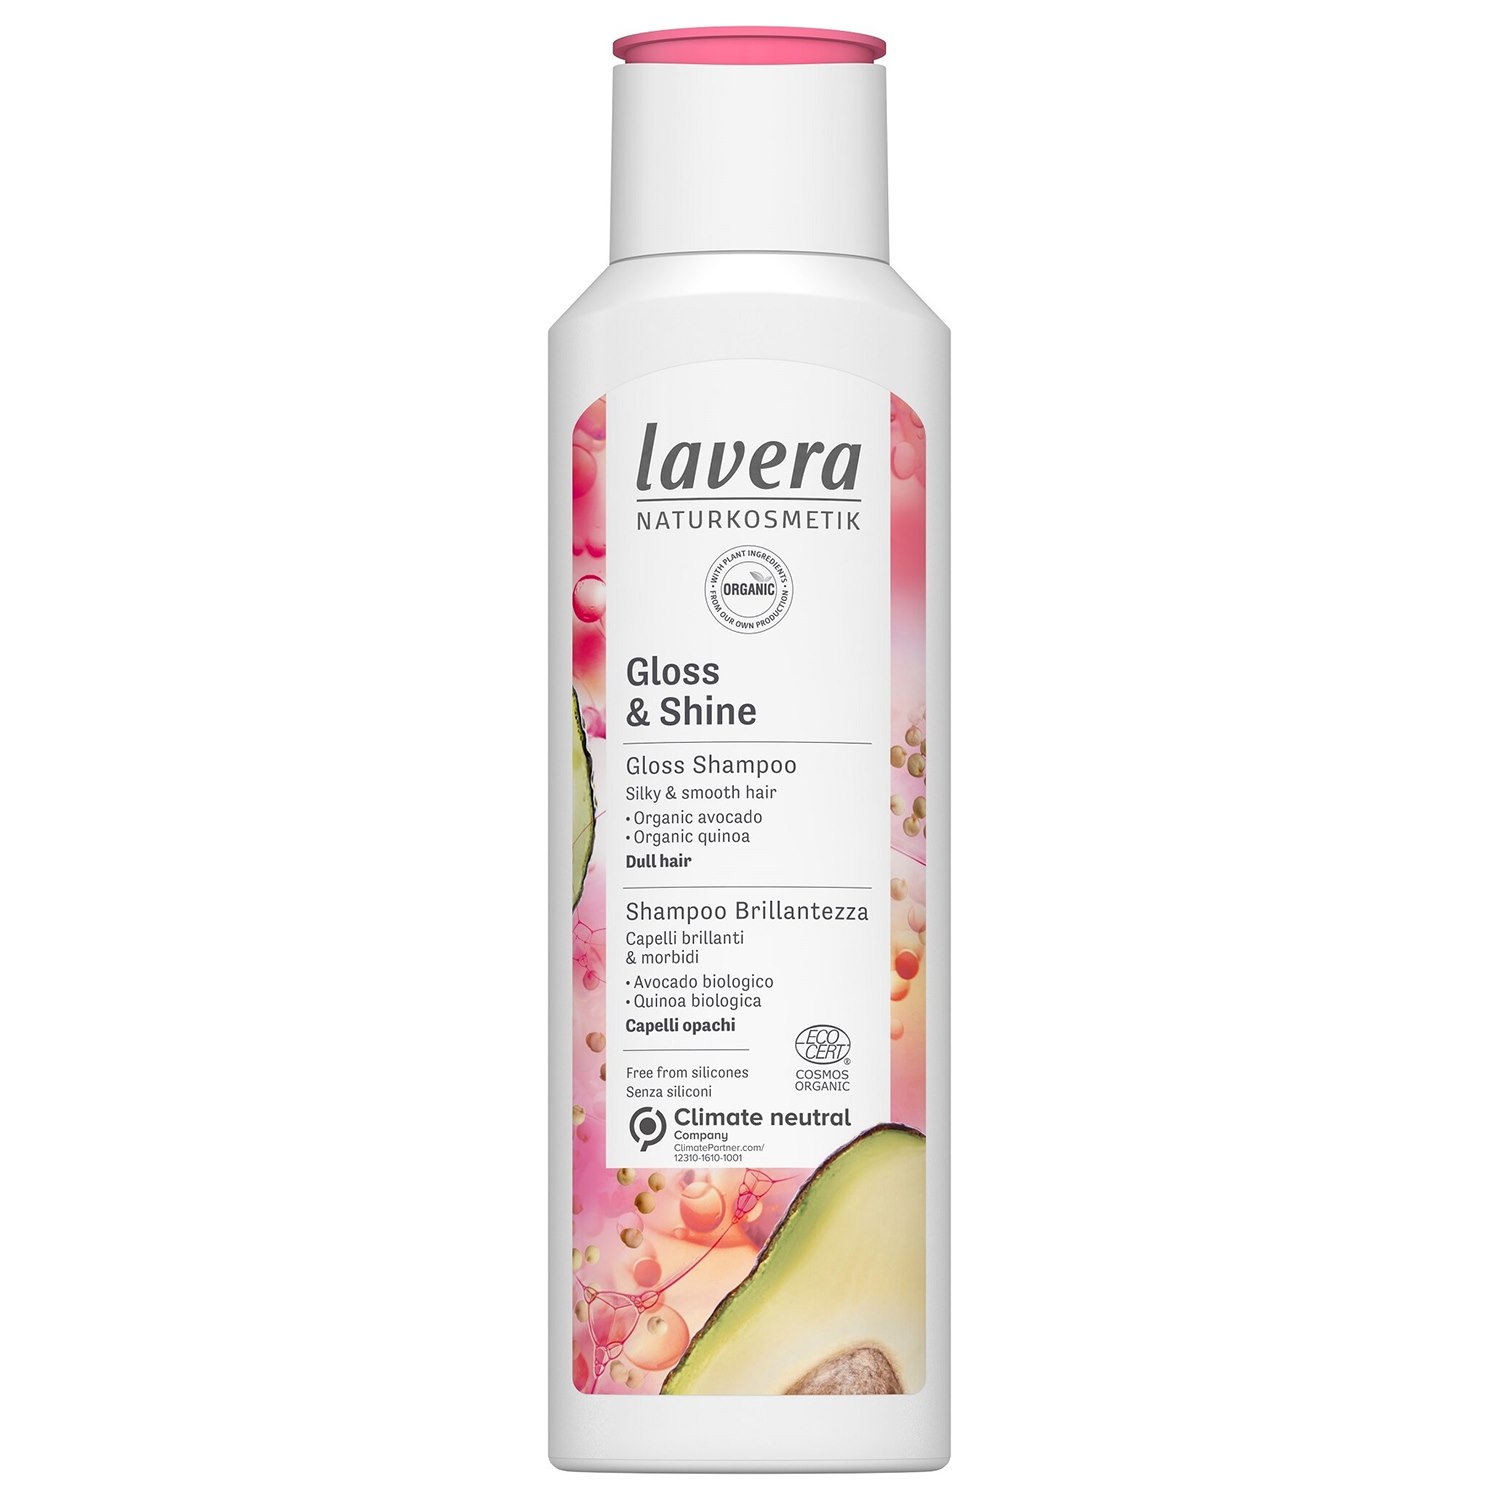 Lavera Naturkosmetik Gloss & Shine Shampoo 250 ml